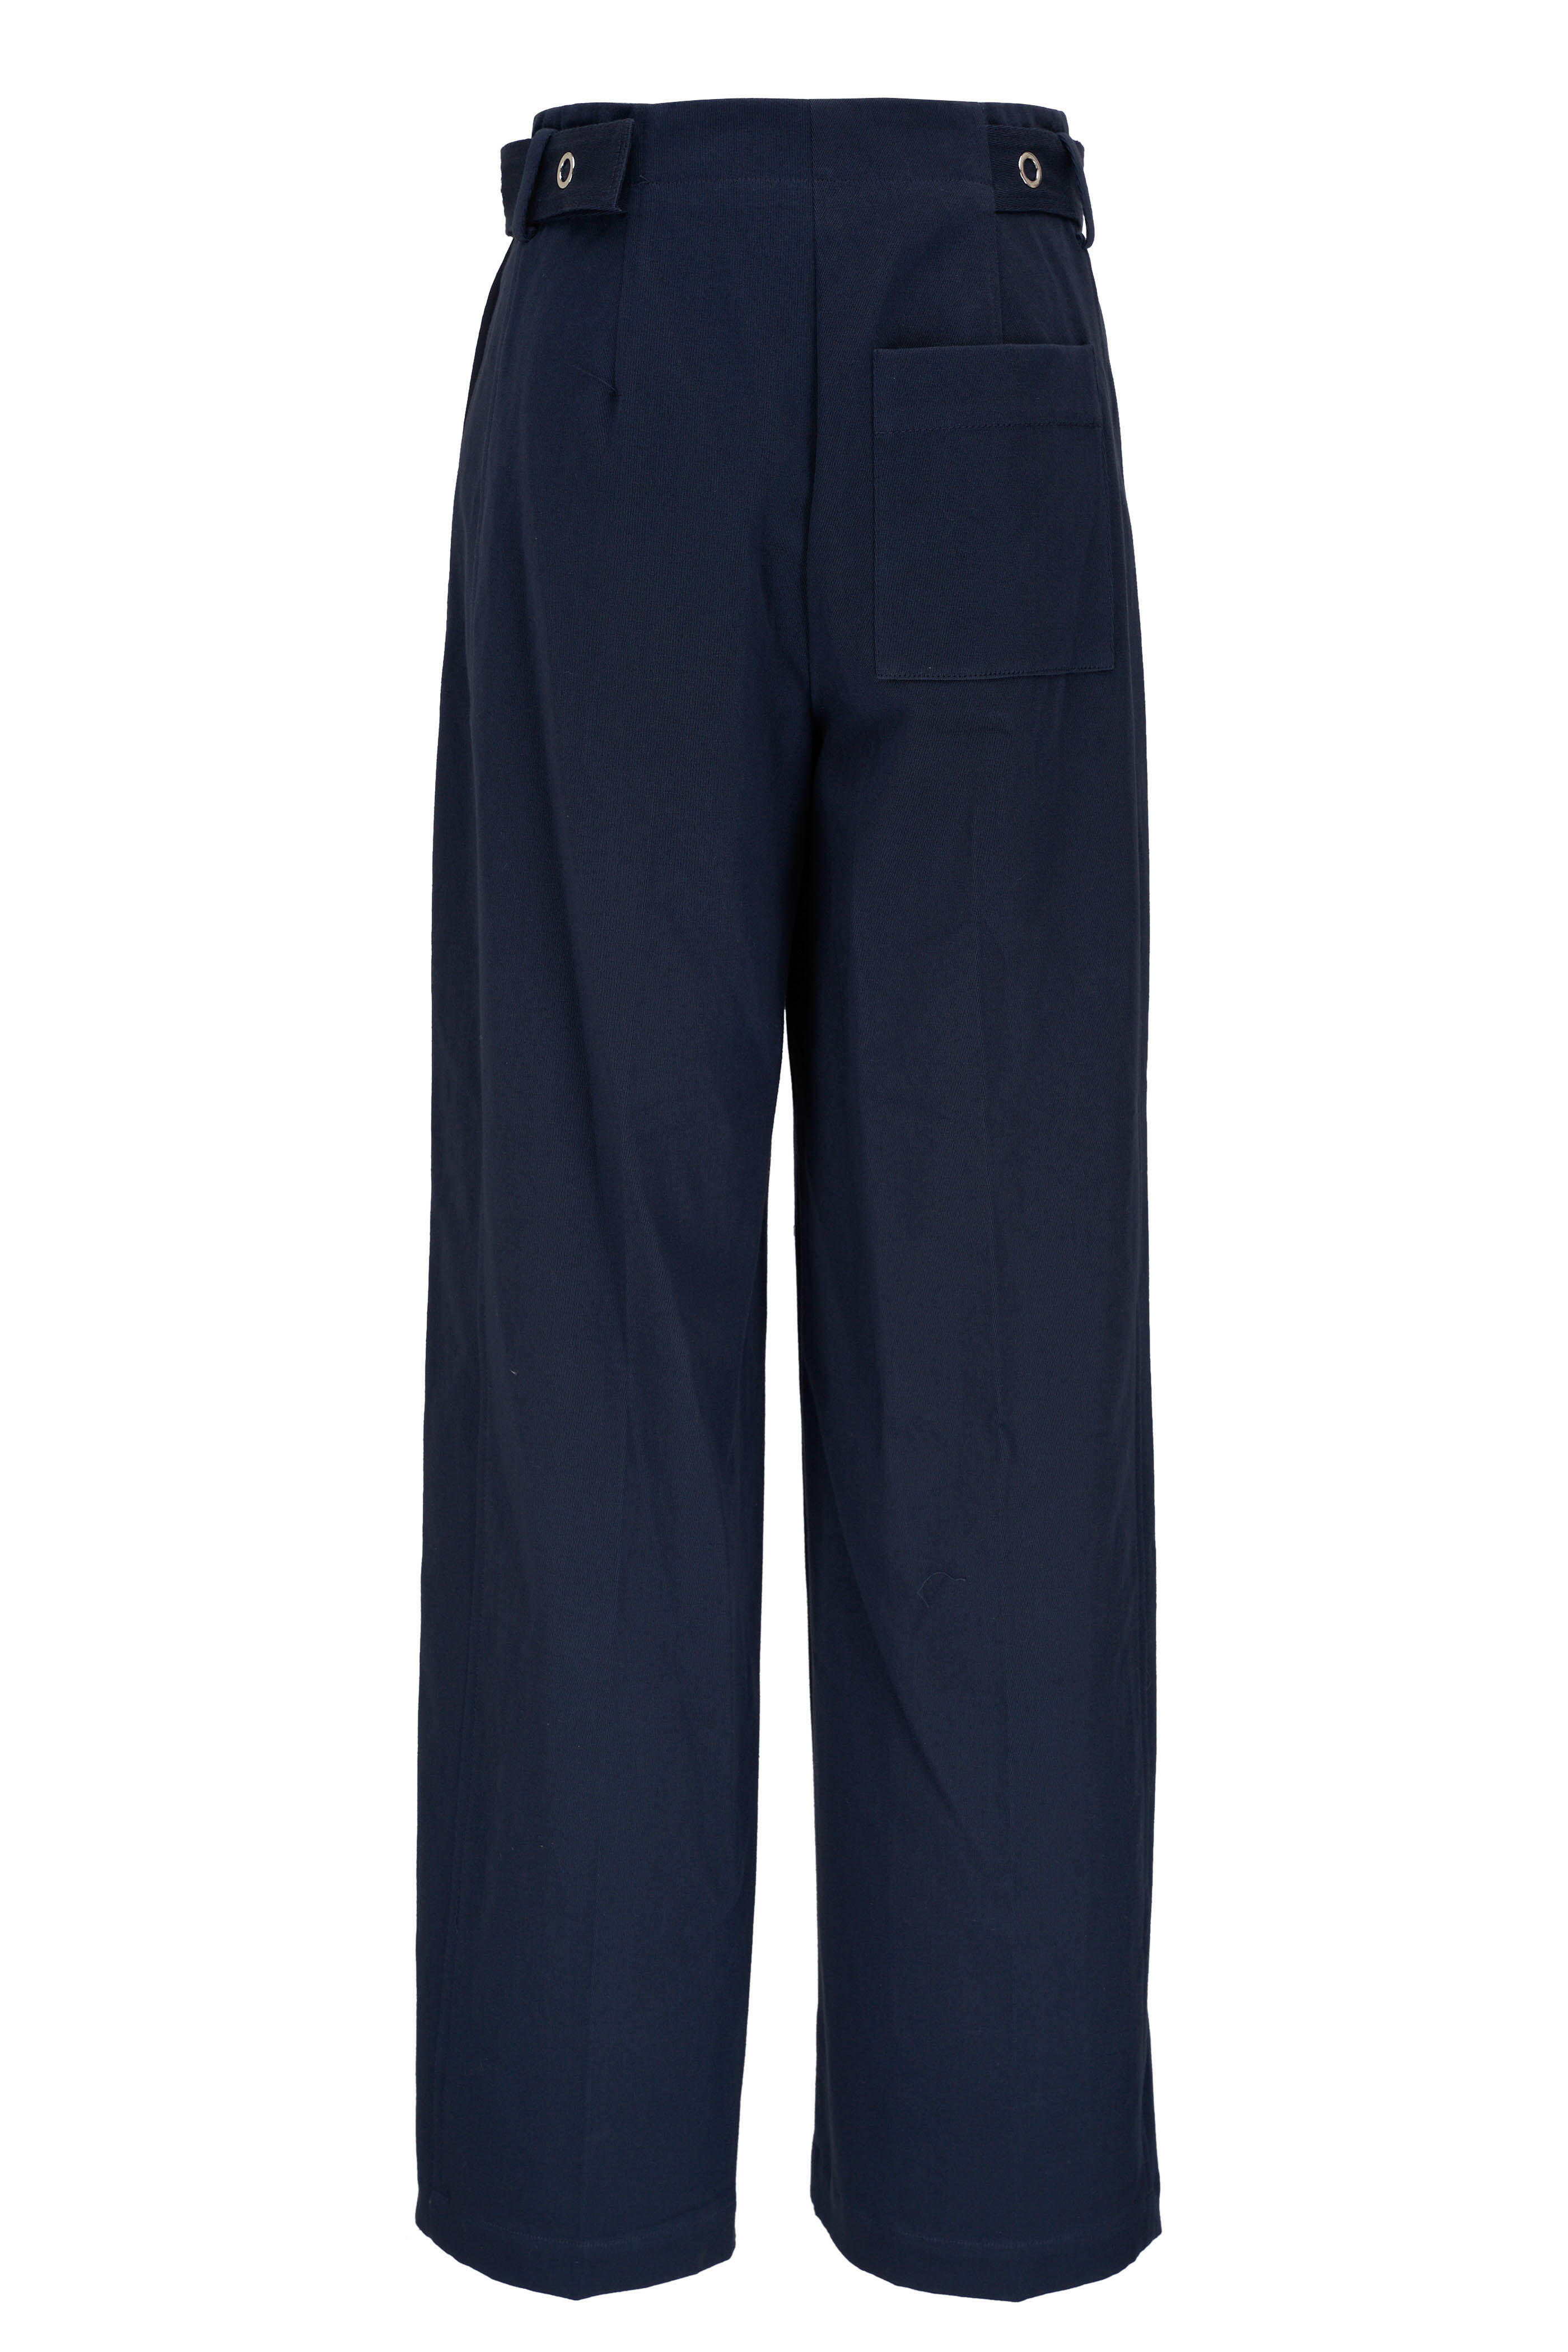 PHILLIP LIM Blend Solid Women's Pants Women Size 2 Navy Pants